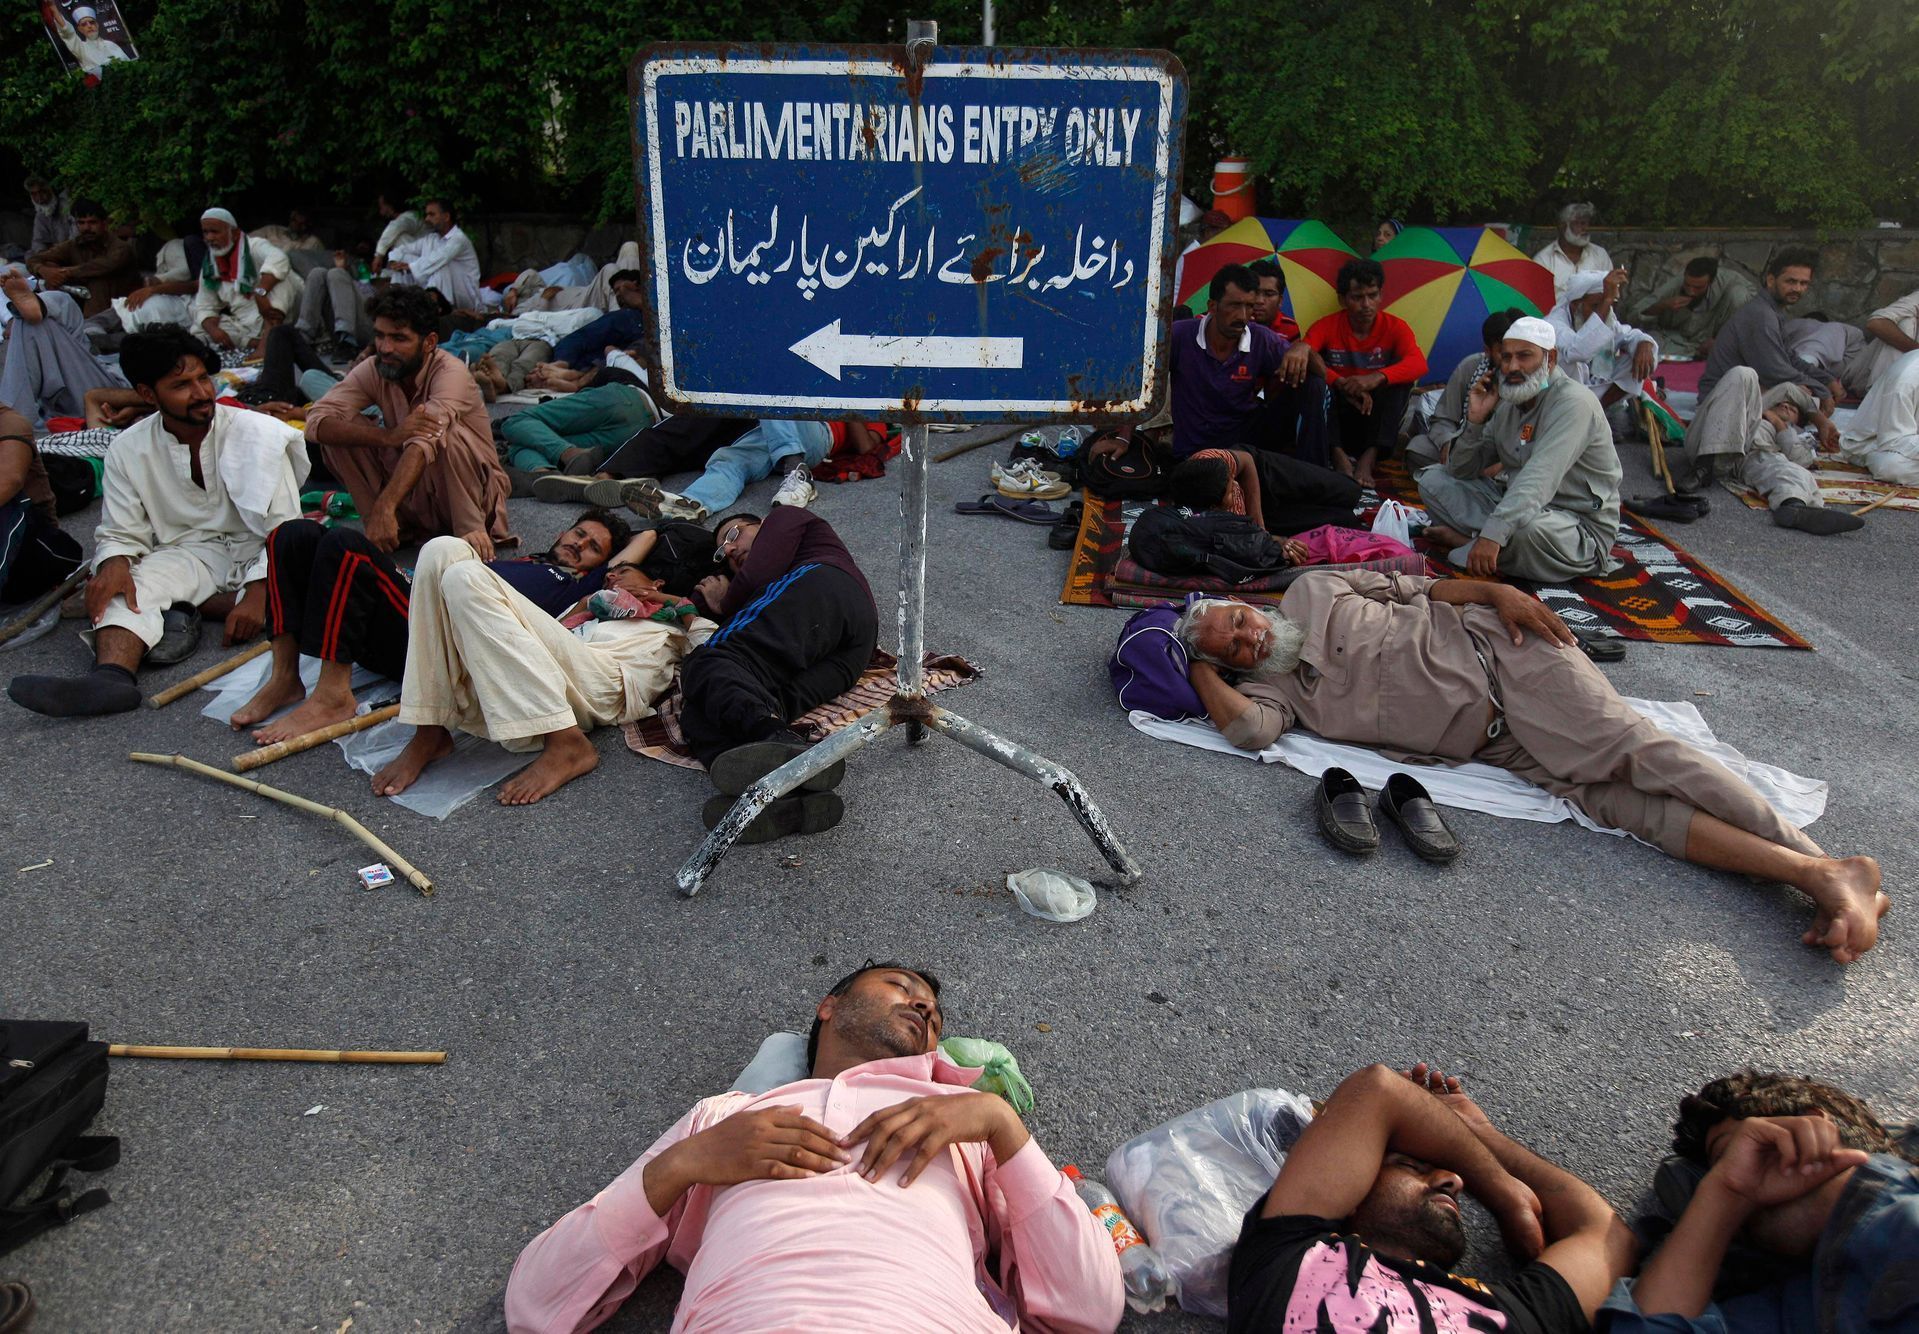 Pákistán - demonstranti blokují vstup do parlamentu